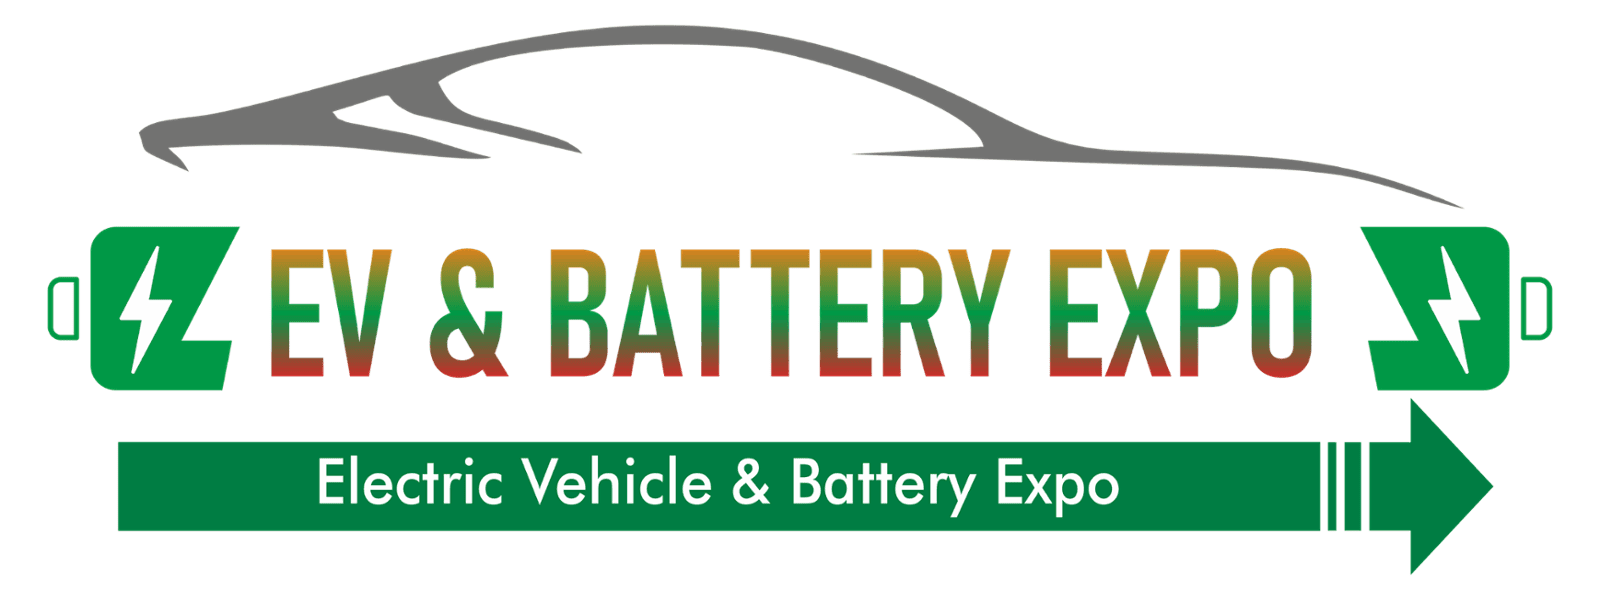 EV & Battery Expo